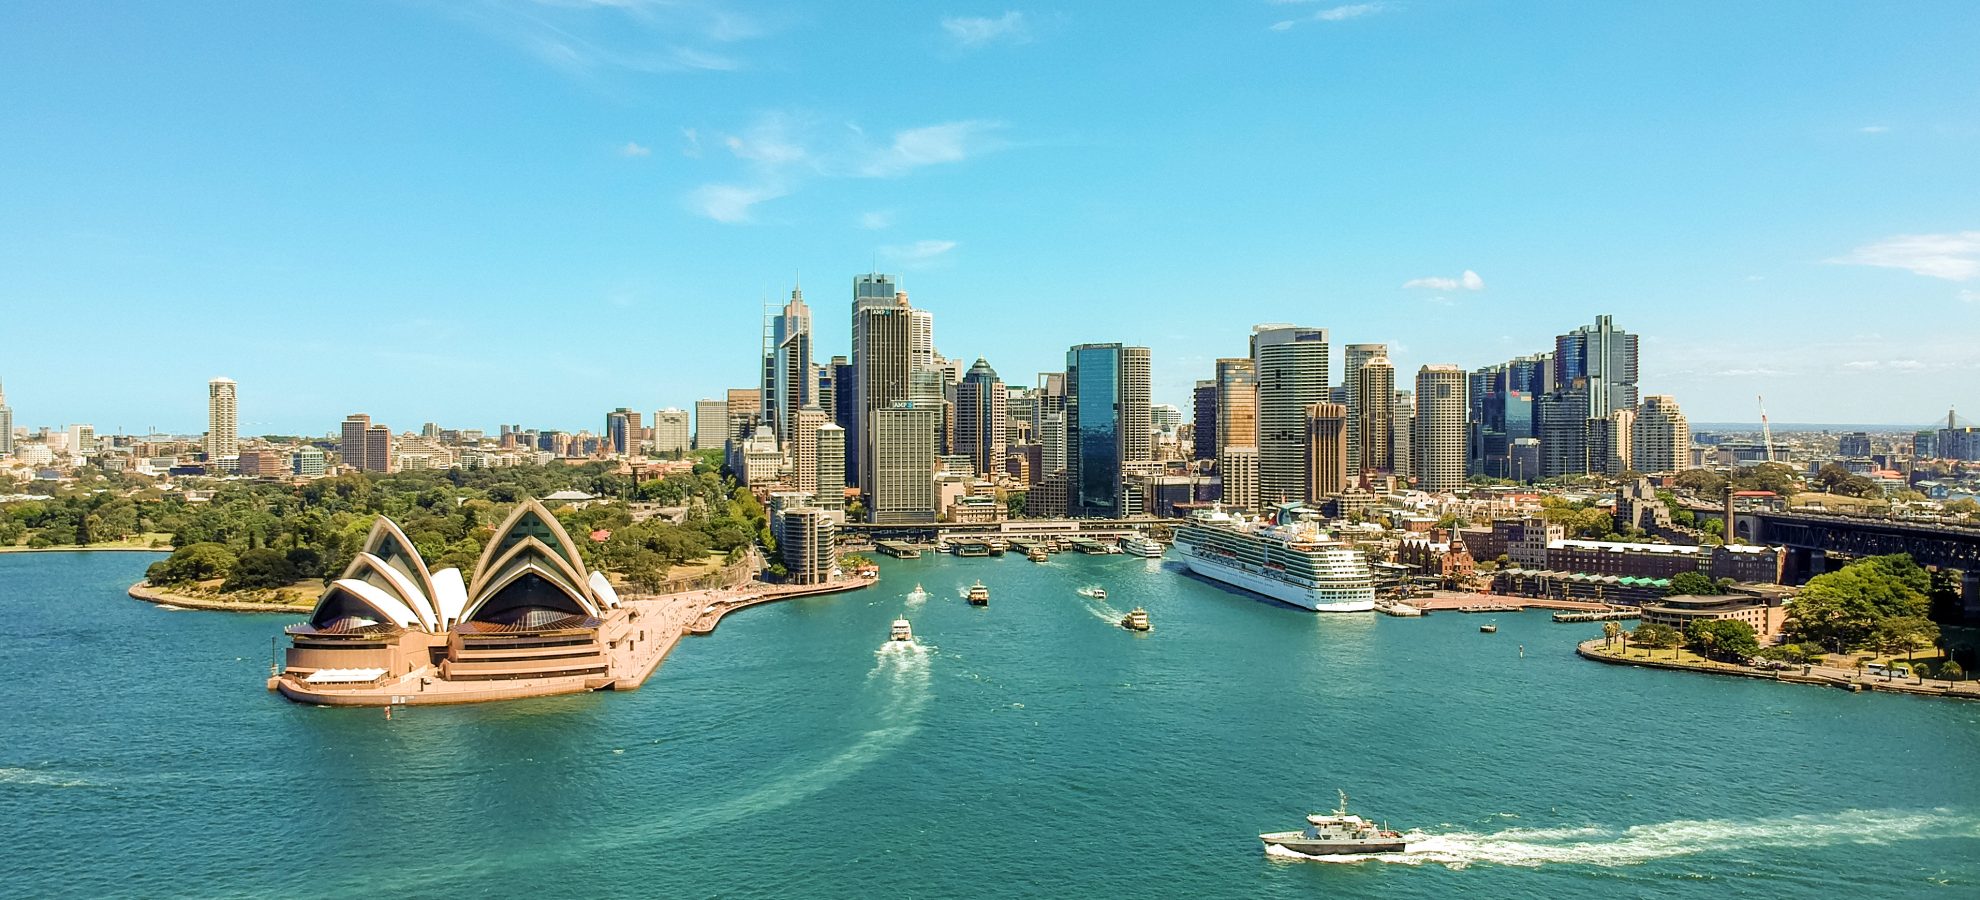 Sydney Harbour met de Opera, een cruiseschip en vele wolkenkrabbers